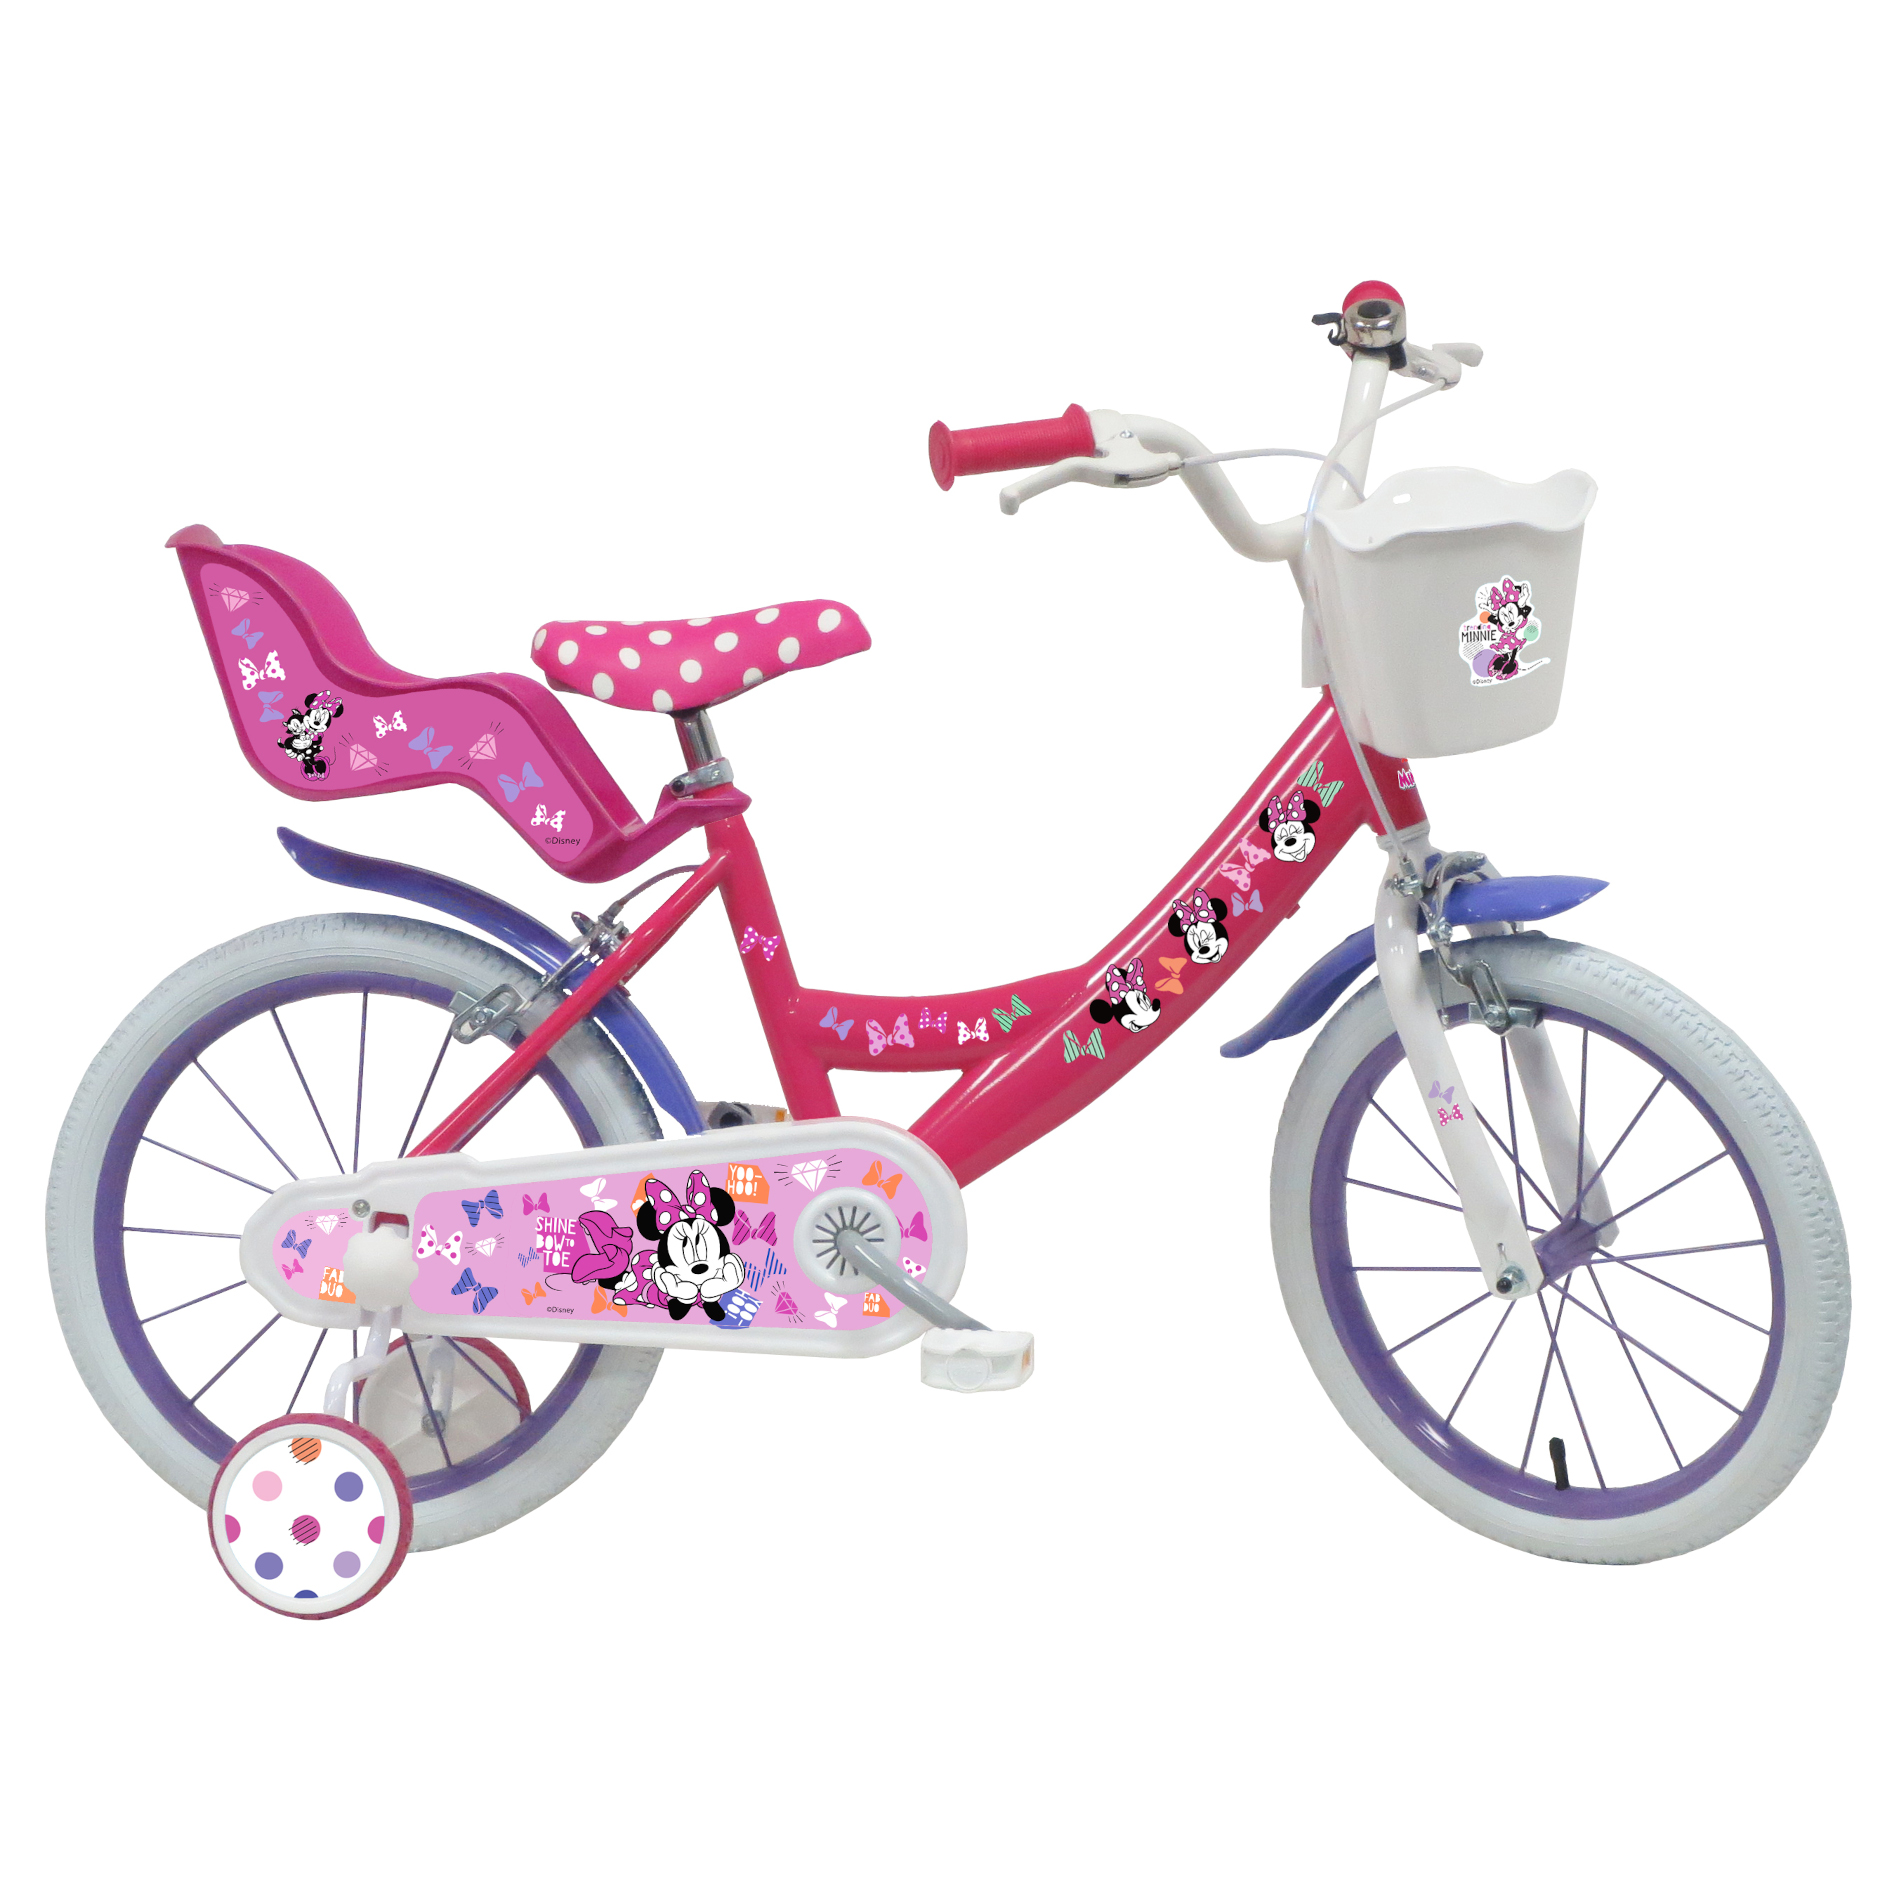 Bicicleta Criança 16 Polegadas Minnie 5-7 Anos - rosa - 